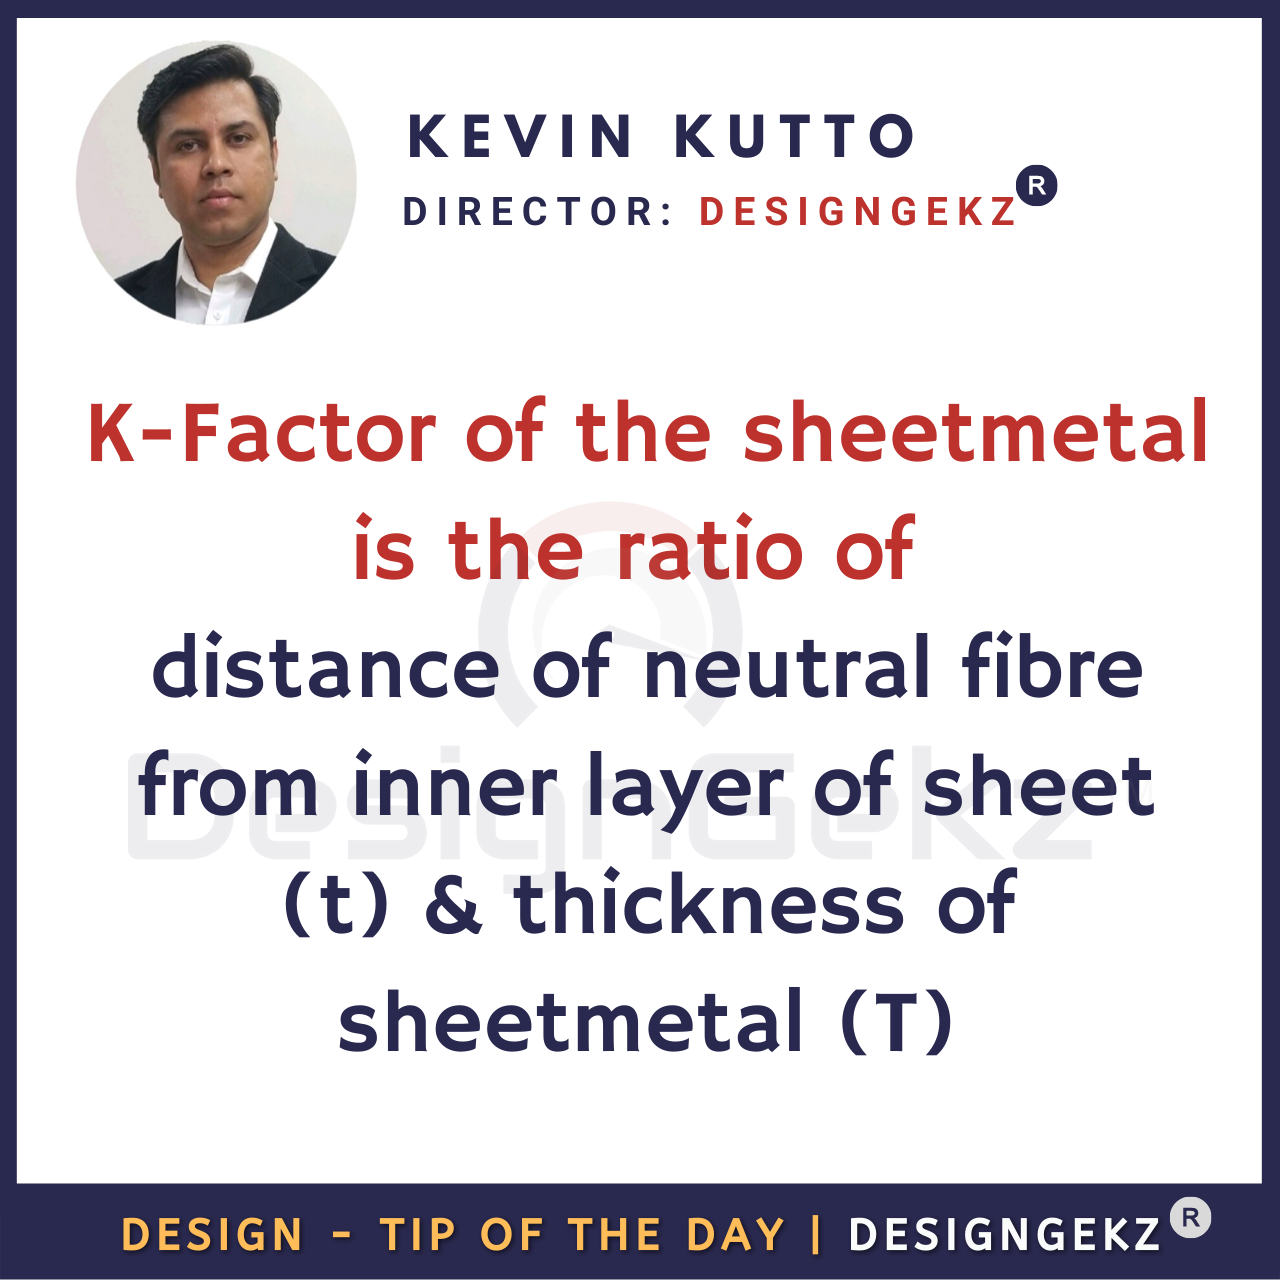 K Factor in sheetmetal Design | Kevin Kutto | Designgekz